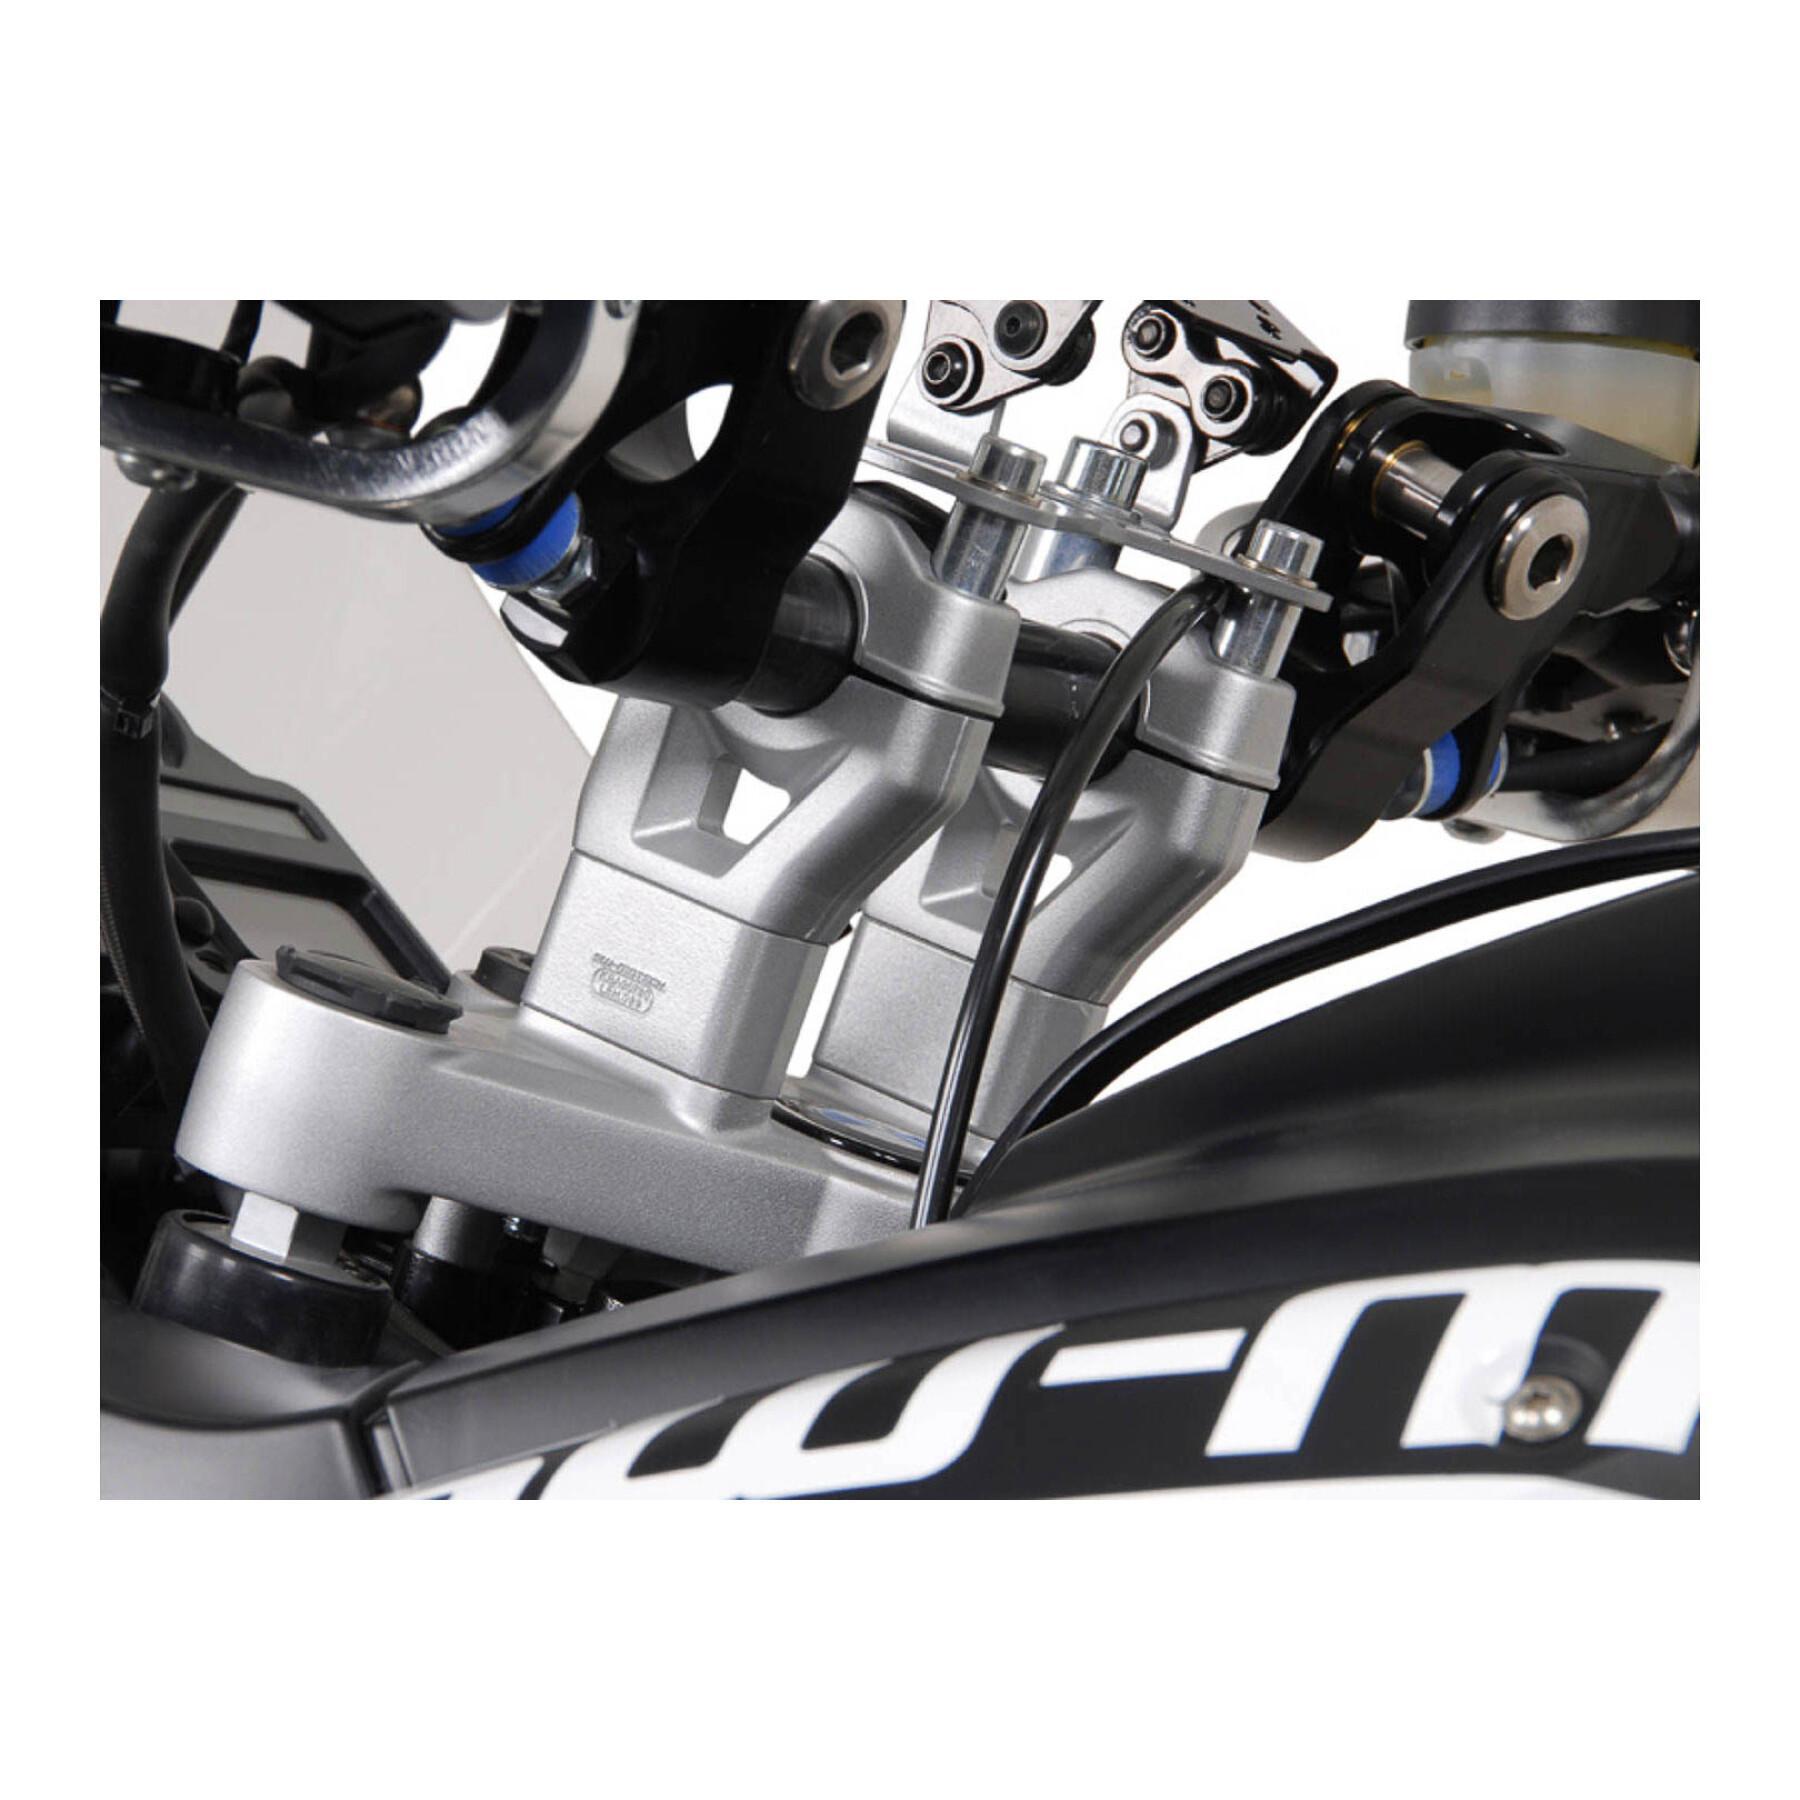 Extensões do guiador da moto h30 mm bmw r 1200 gs (08-)SW-Motech